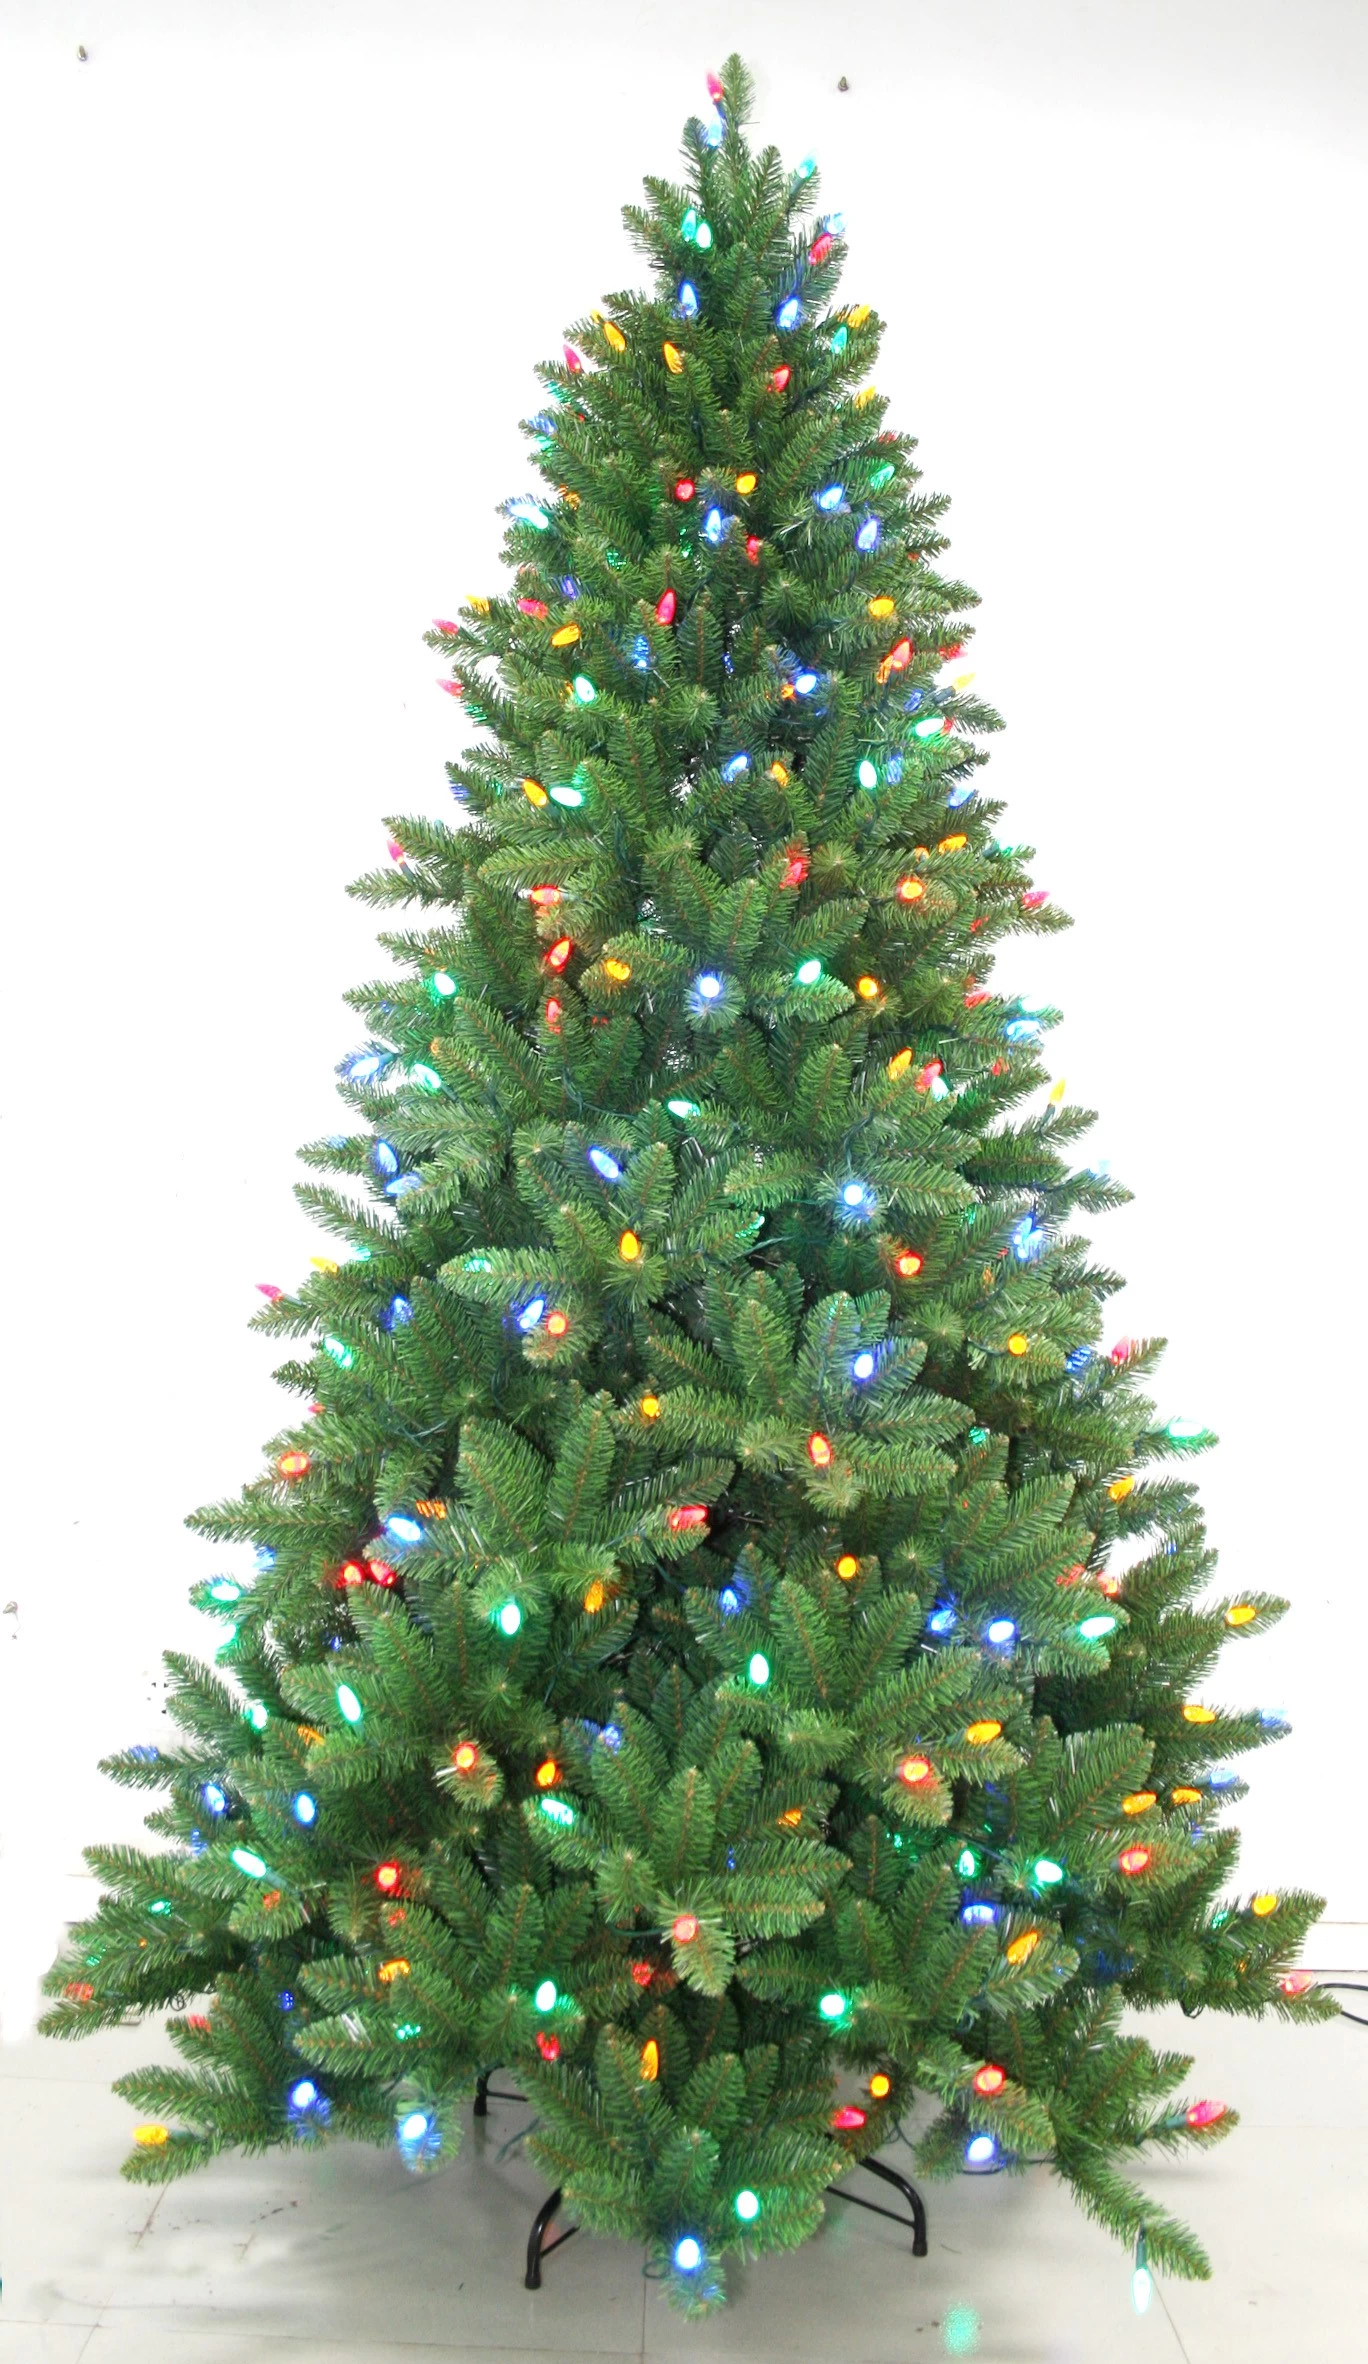 China fabriek prijs leuke kerstboom decoraties, kerstboom van vilt decoratie fabrikant